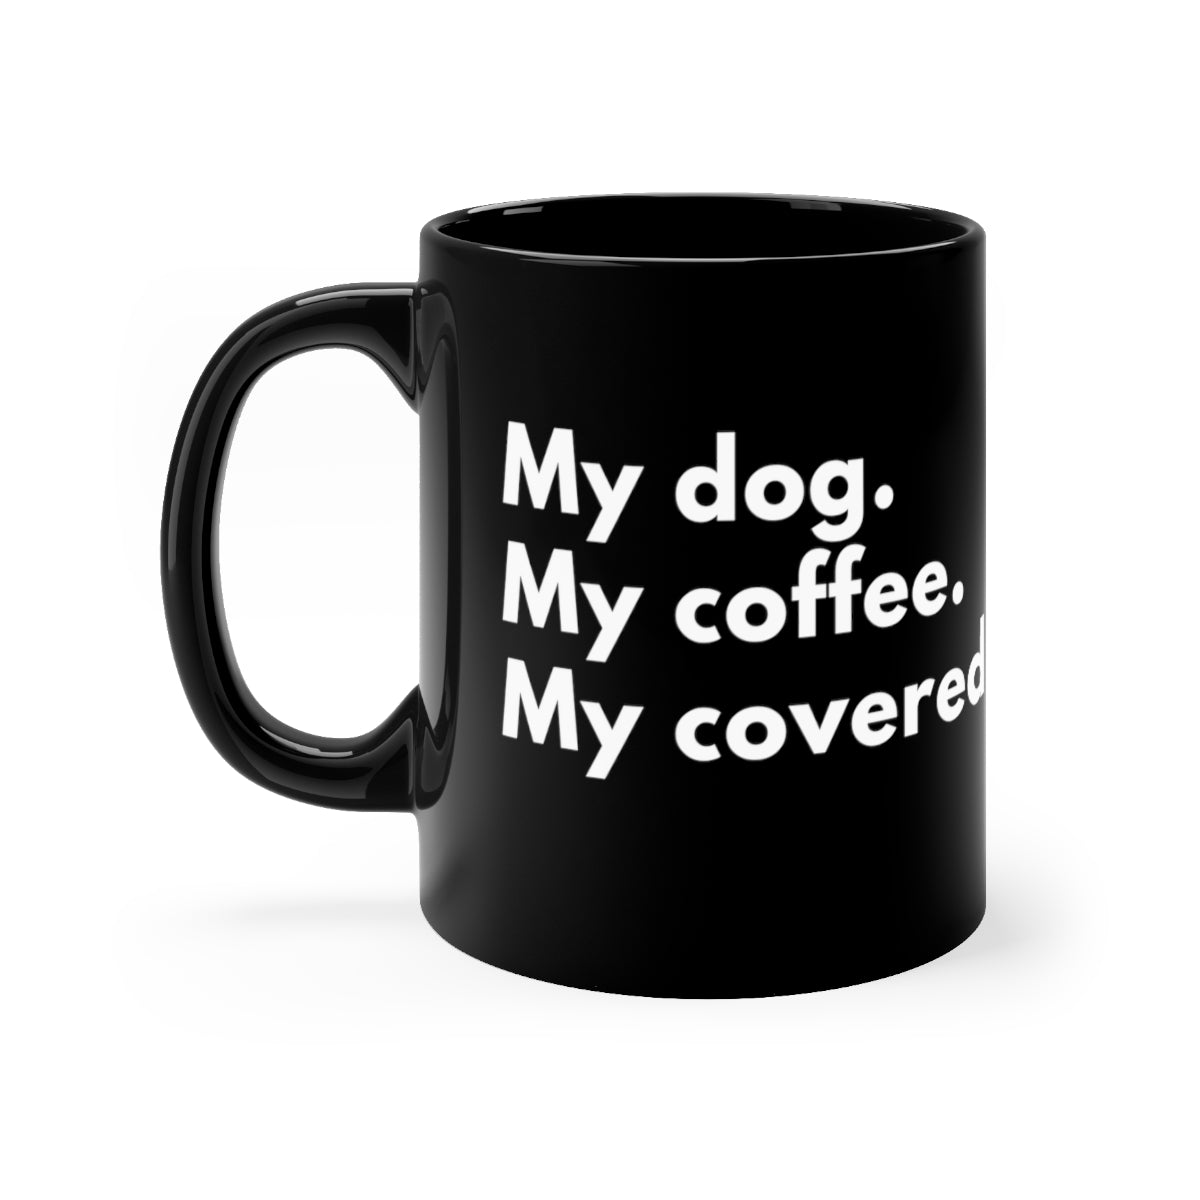 Mon chien. Mon café. Mes appels couverts.